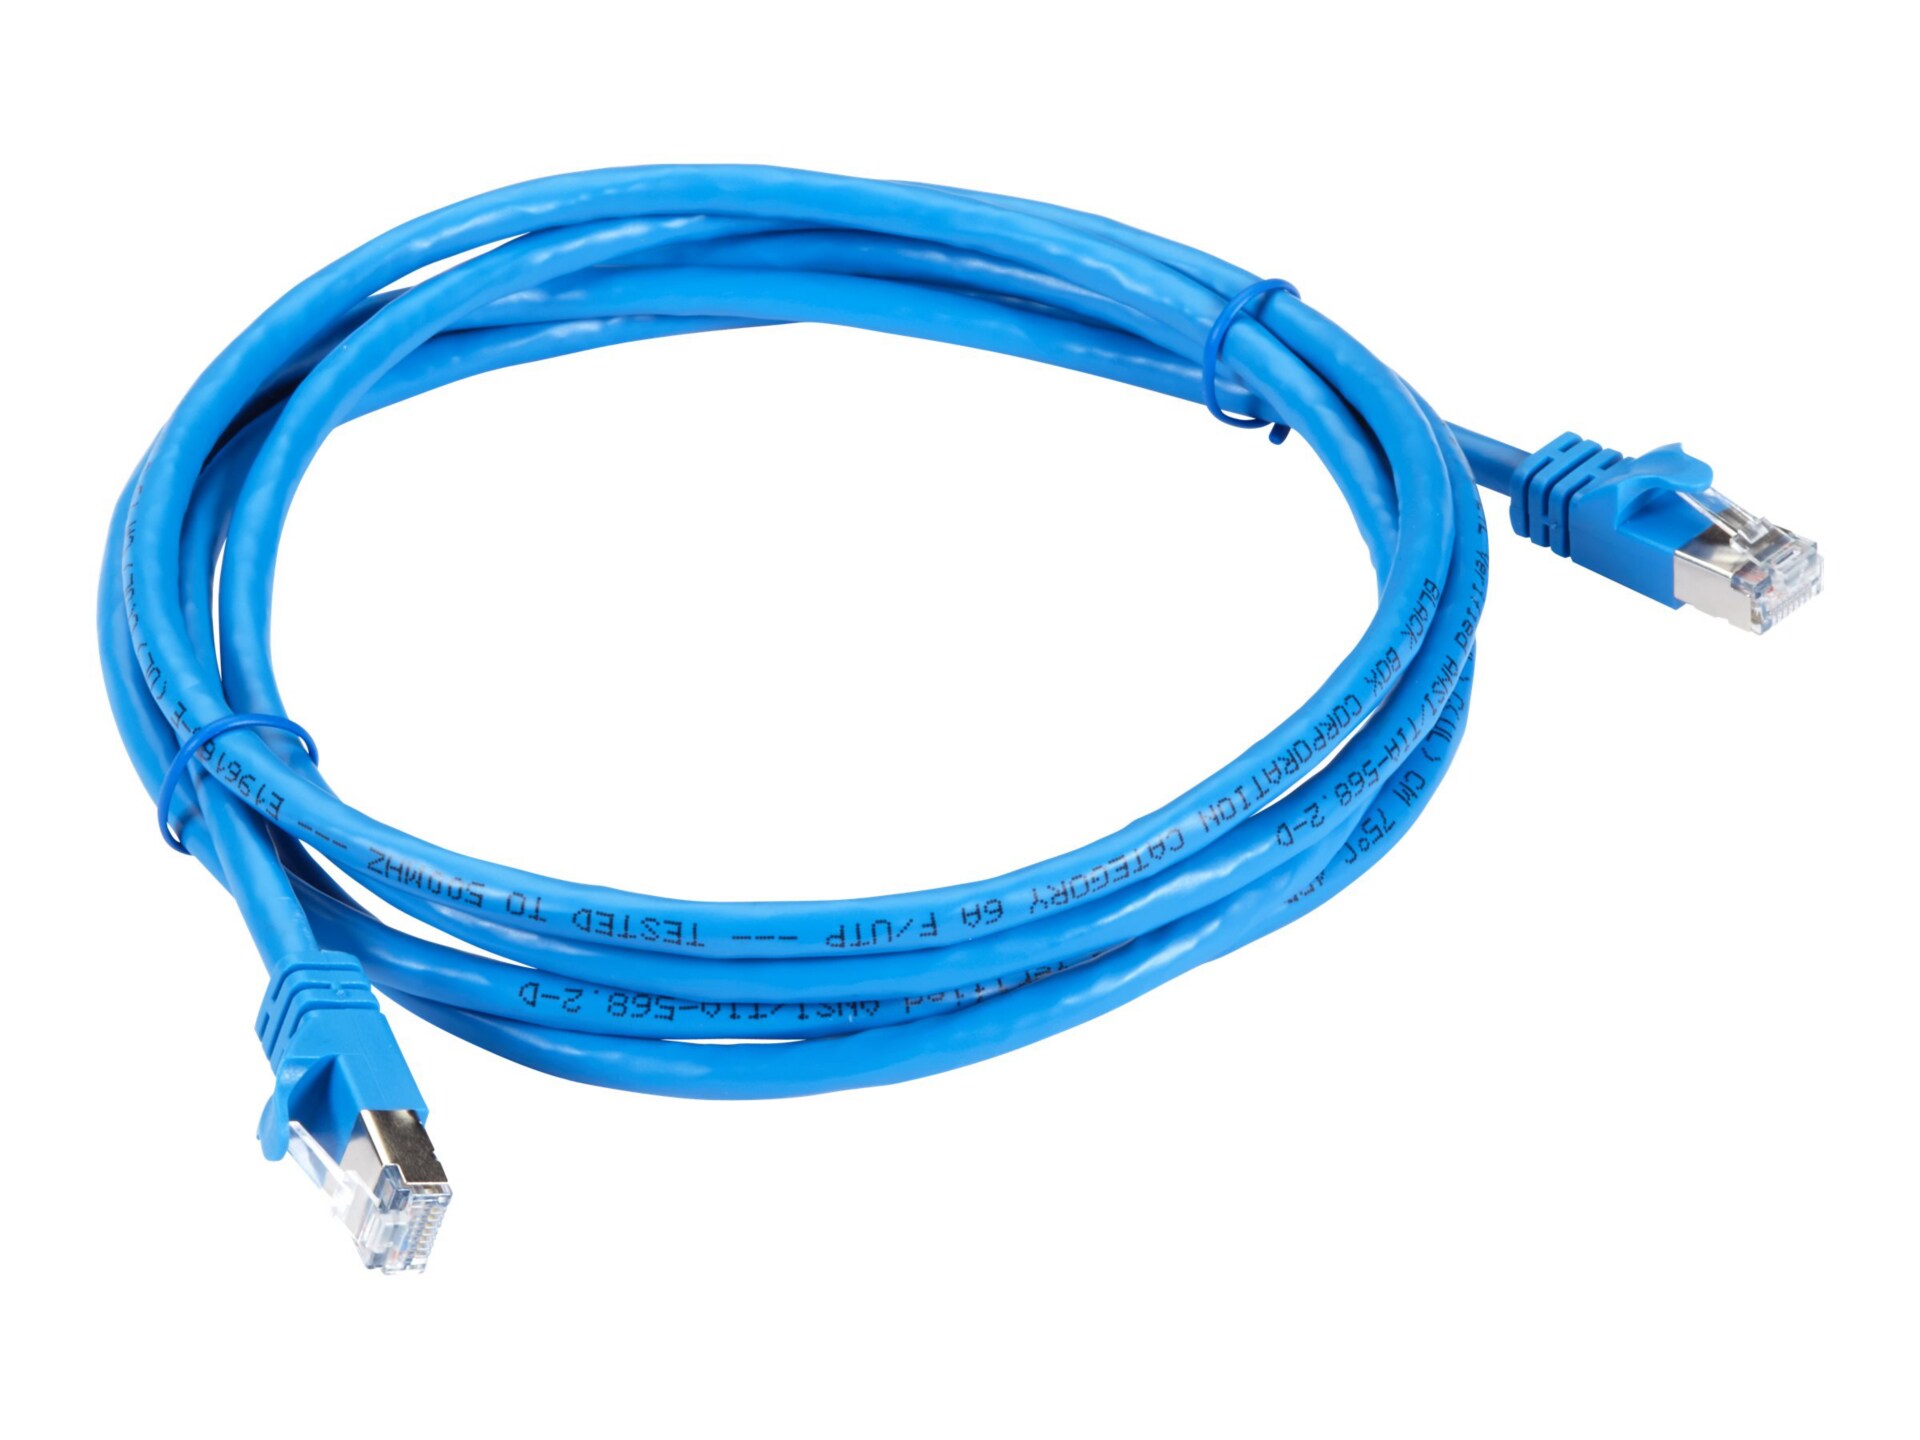 Black Box GigaTrue patch cable - 5 ft - blue